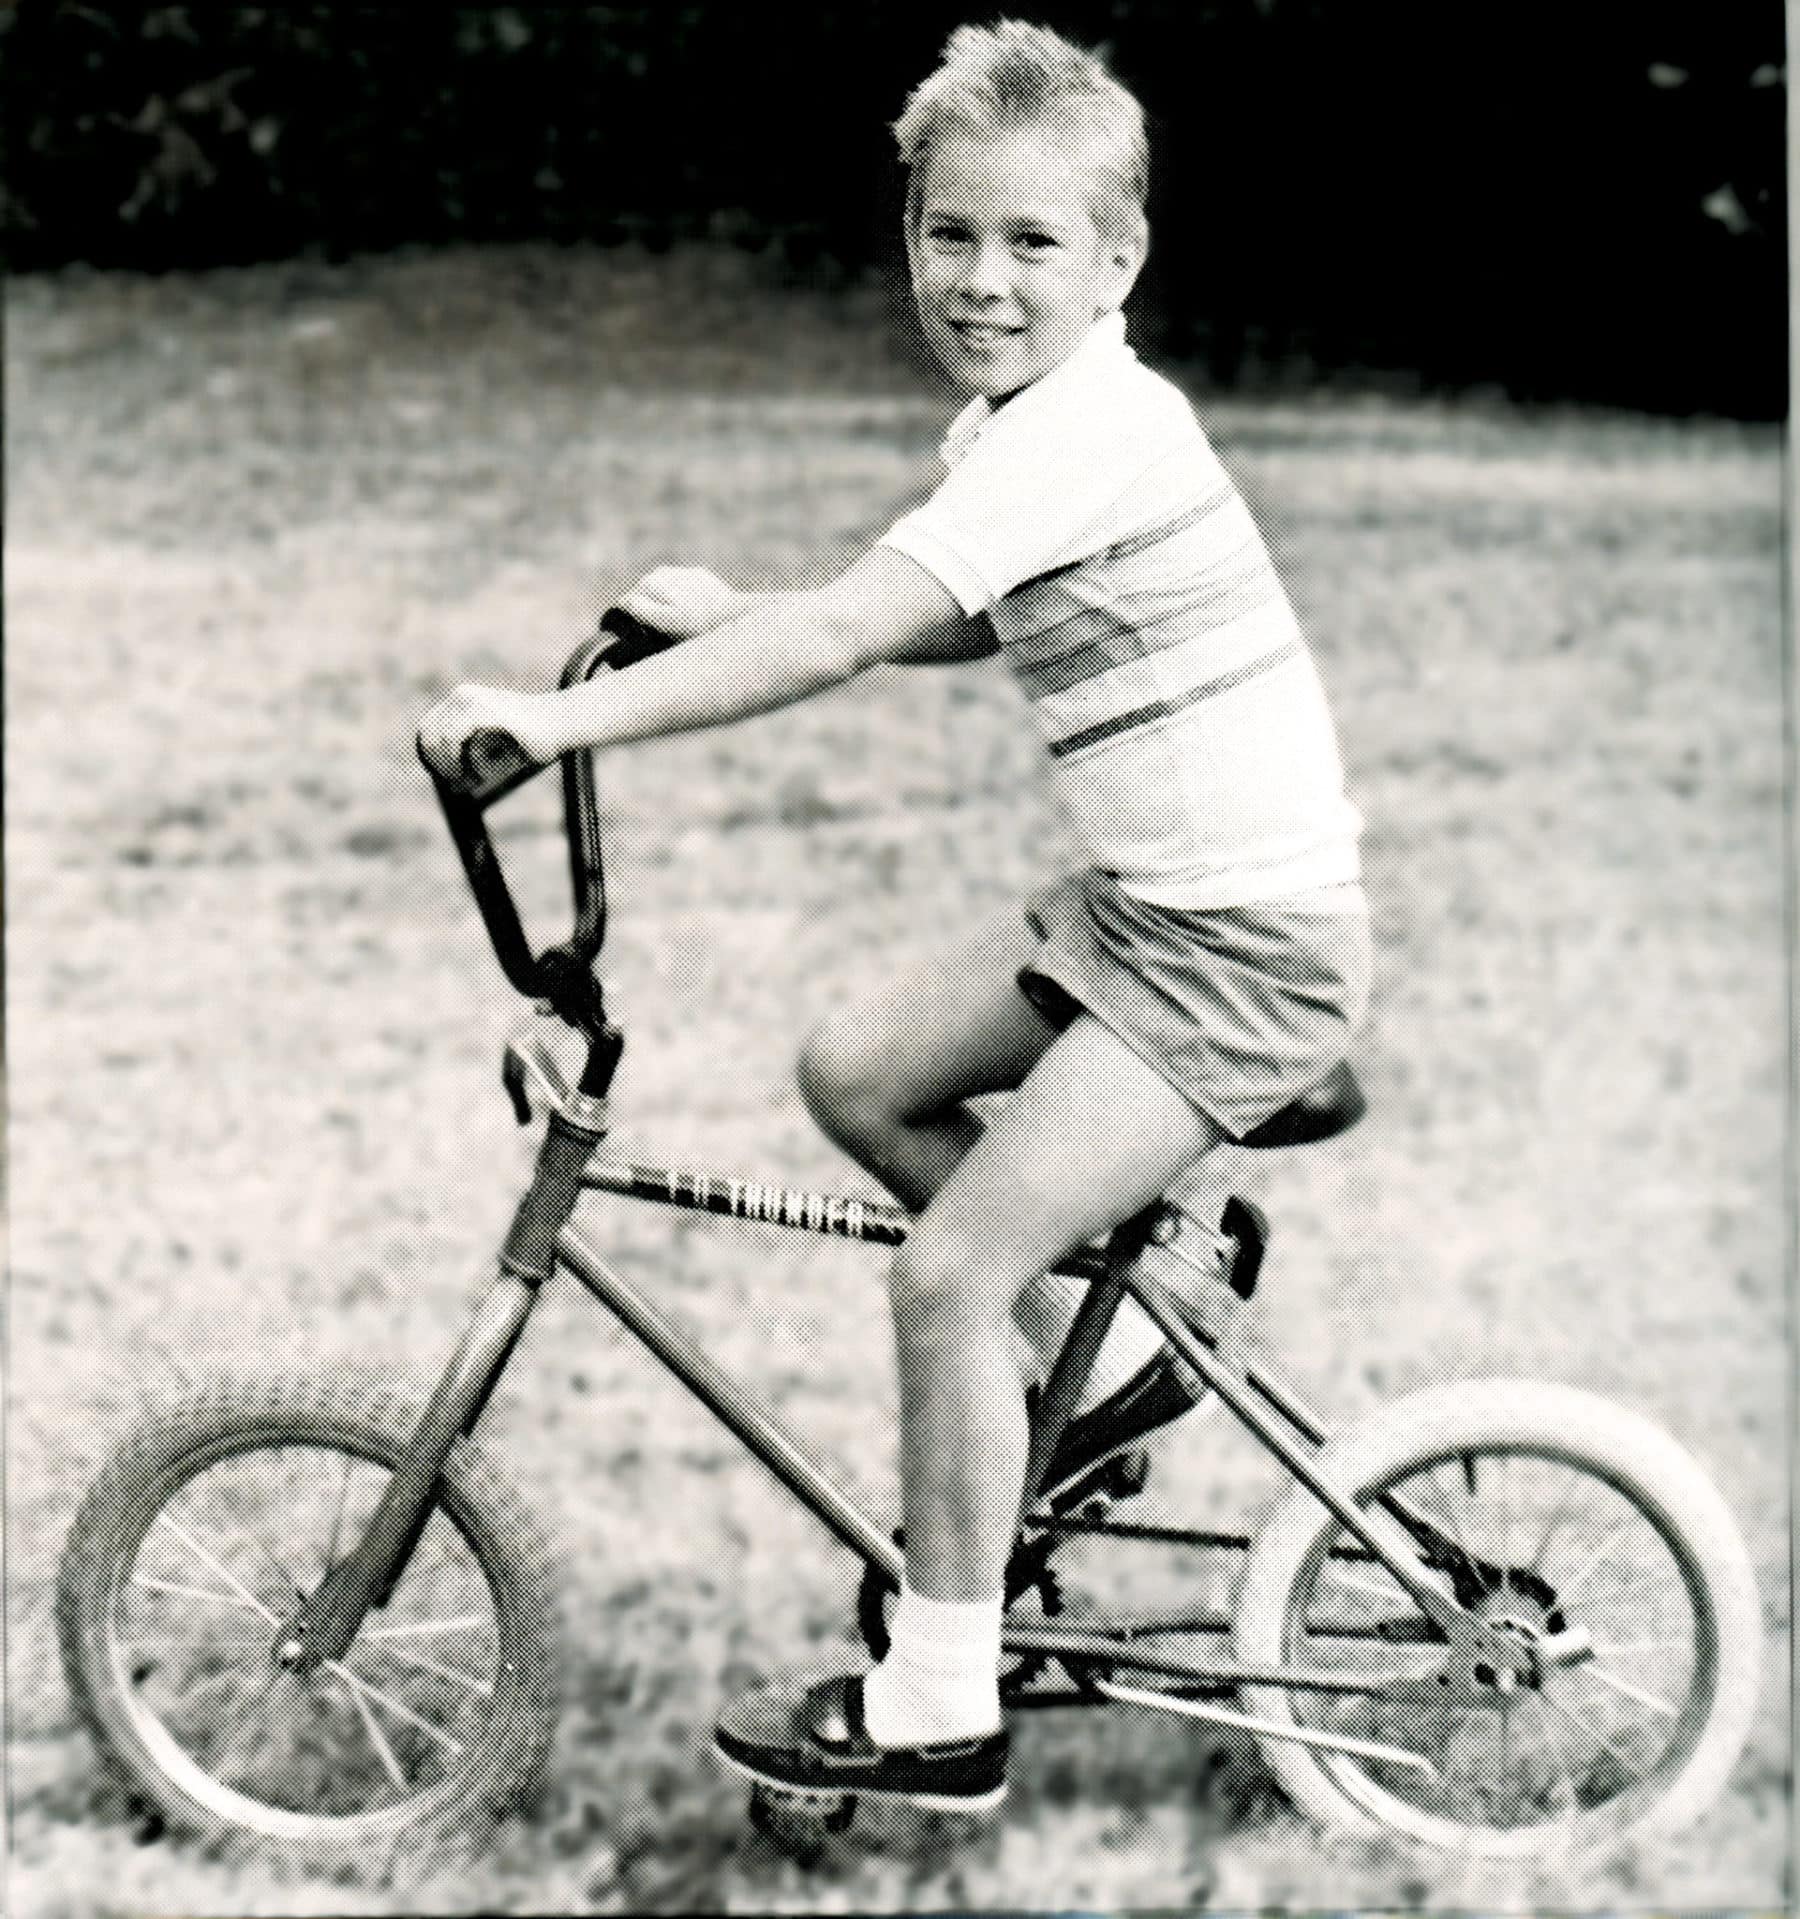 1989 Boy on Bike